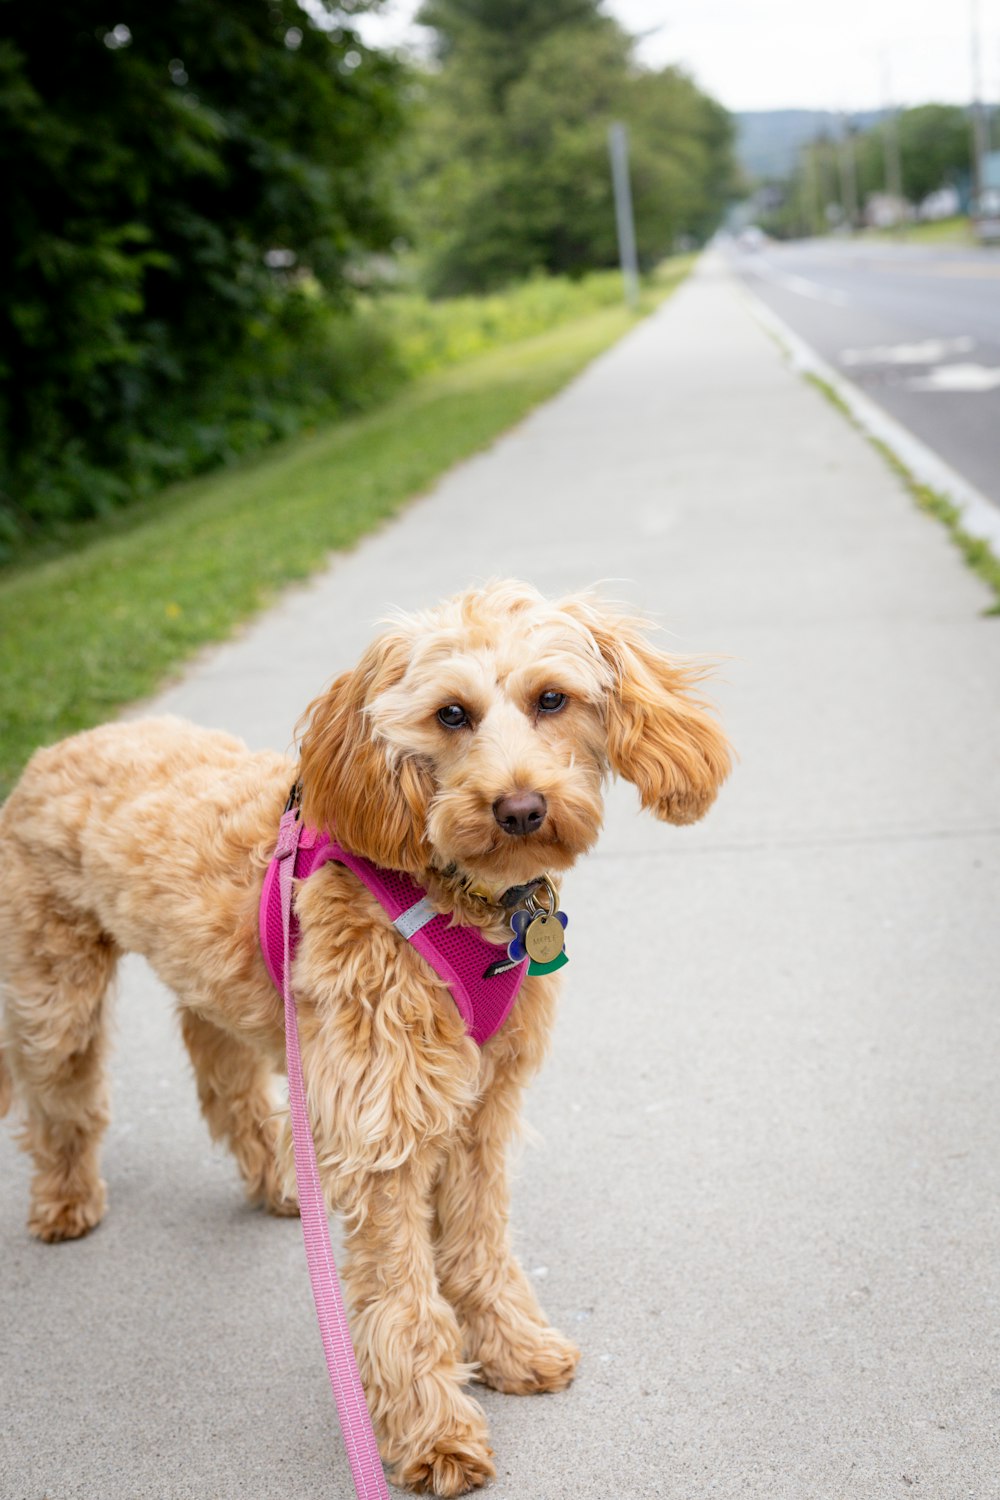 Un perro marrón con una correa rosa parado en una acera